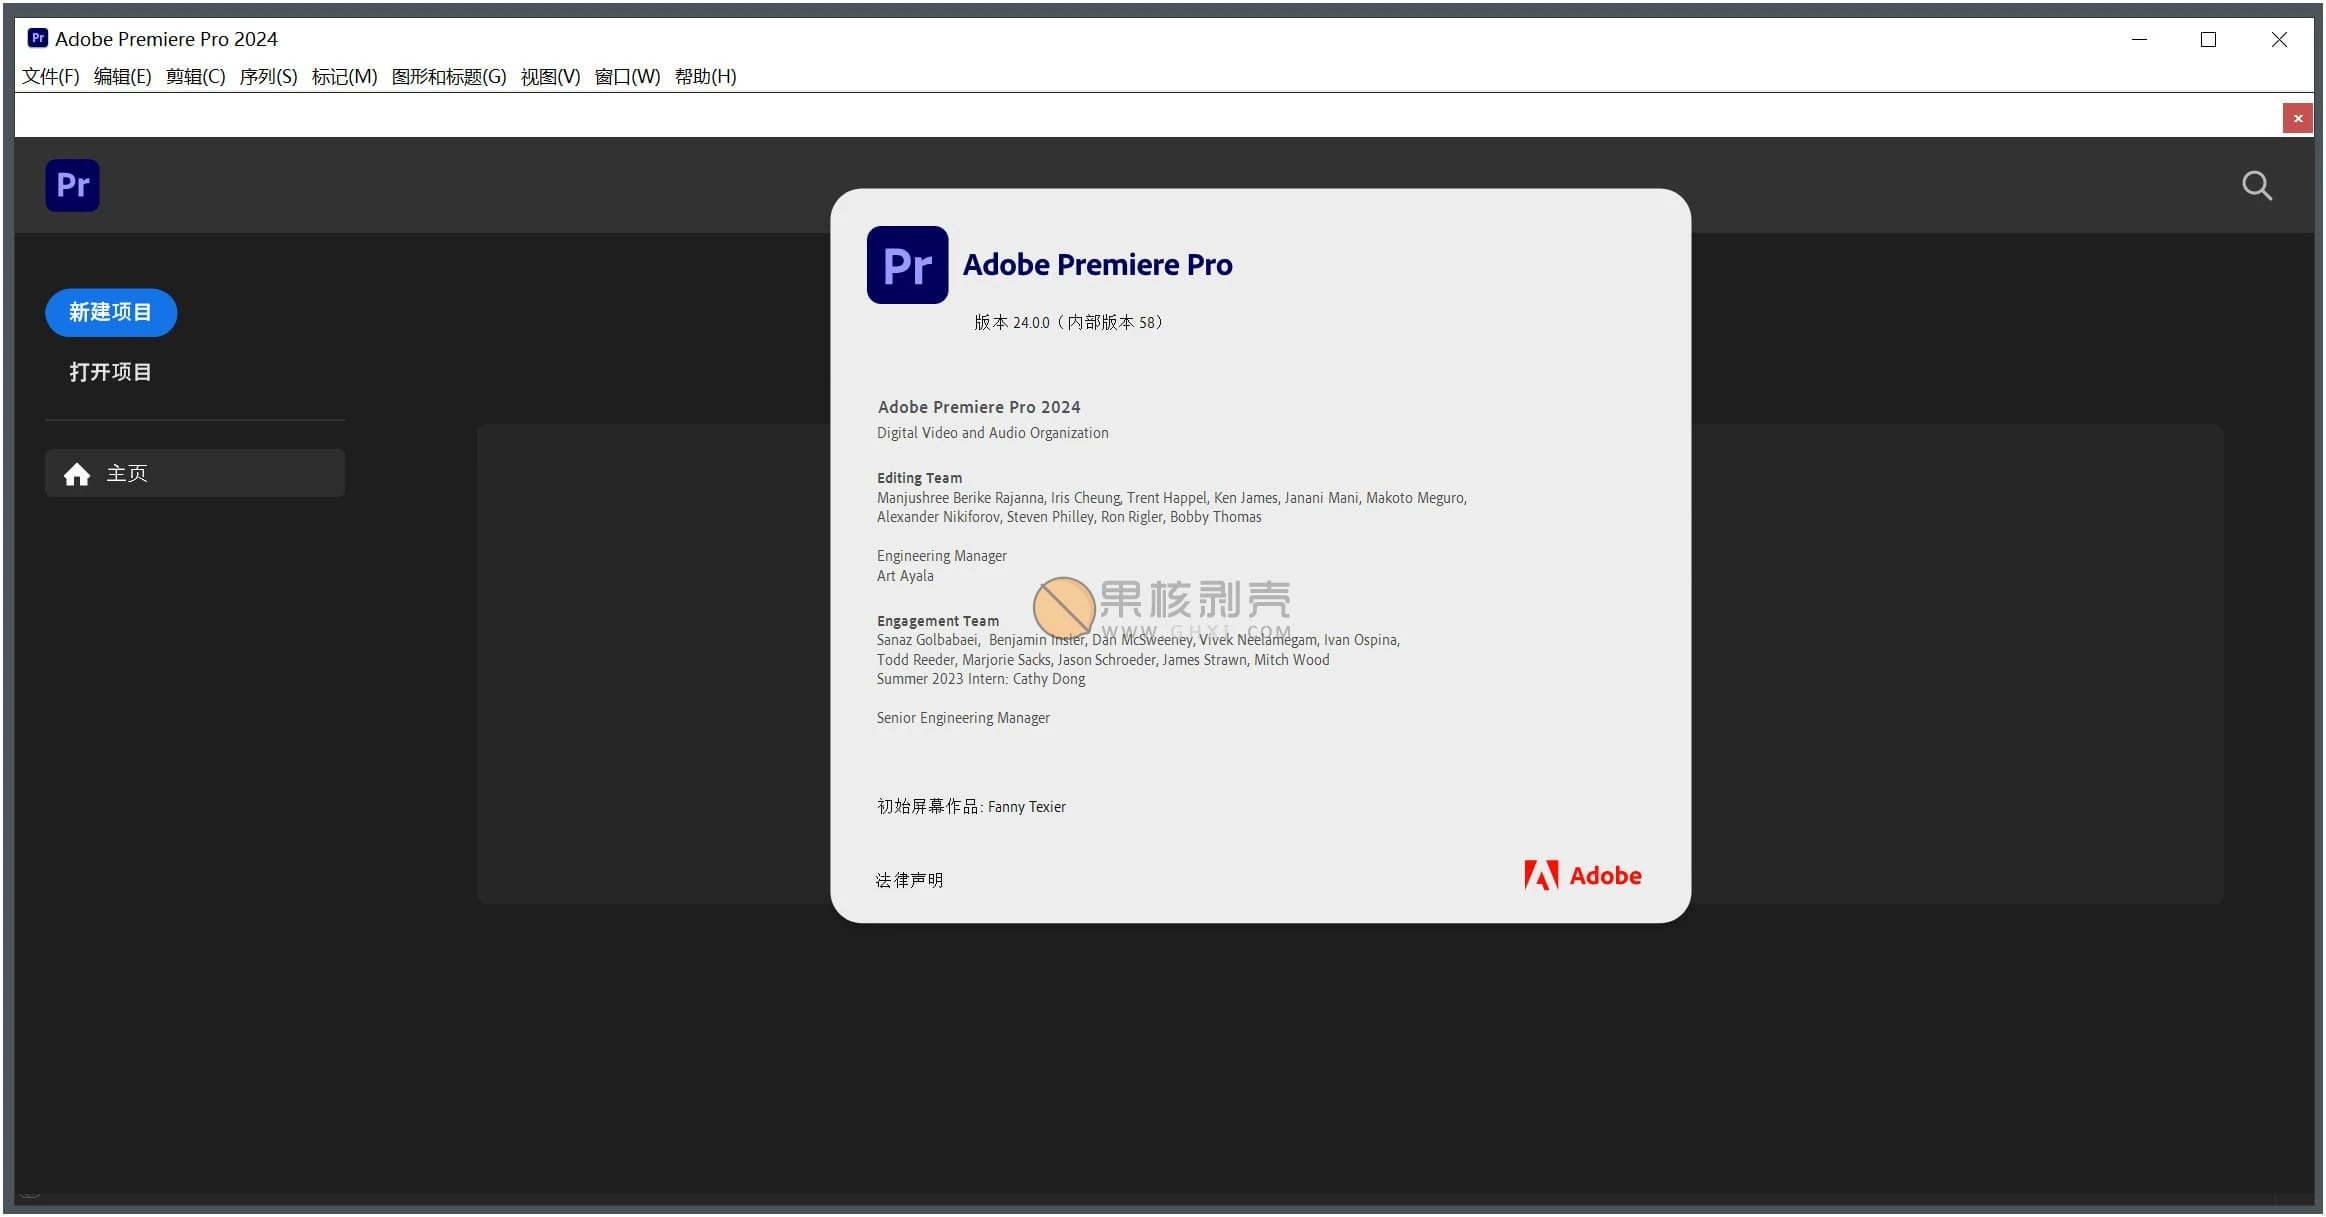 Adobe Premiere Pro 2024 (24.3.0) 特别版